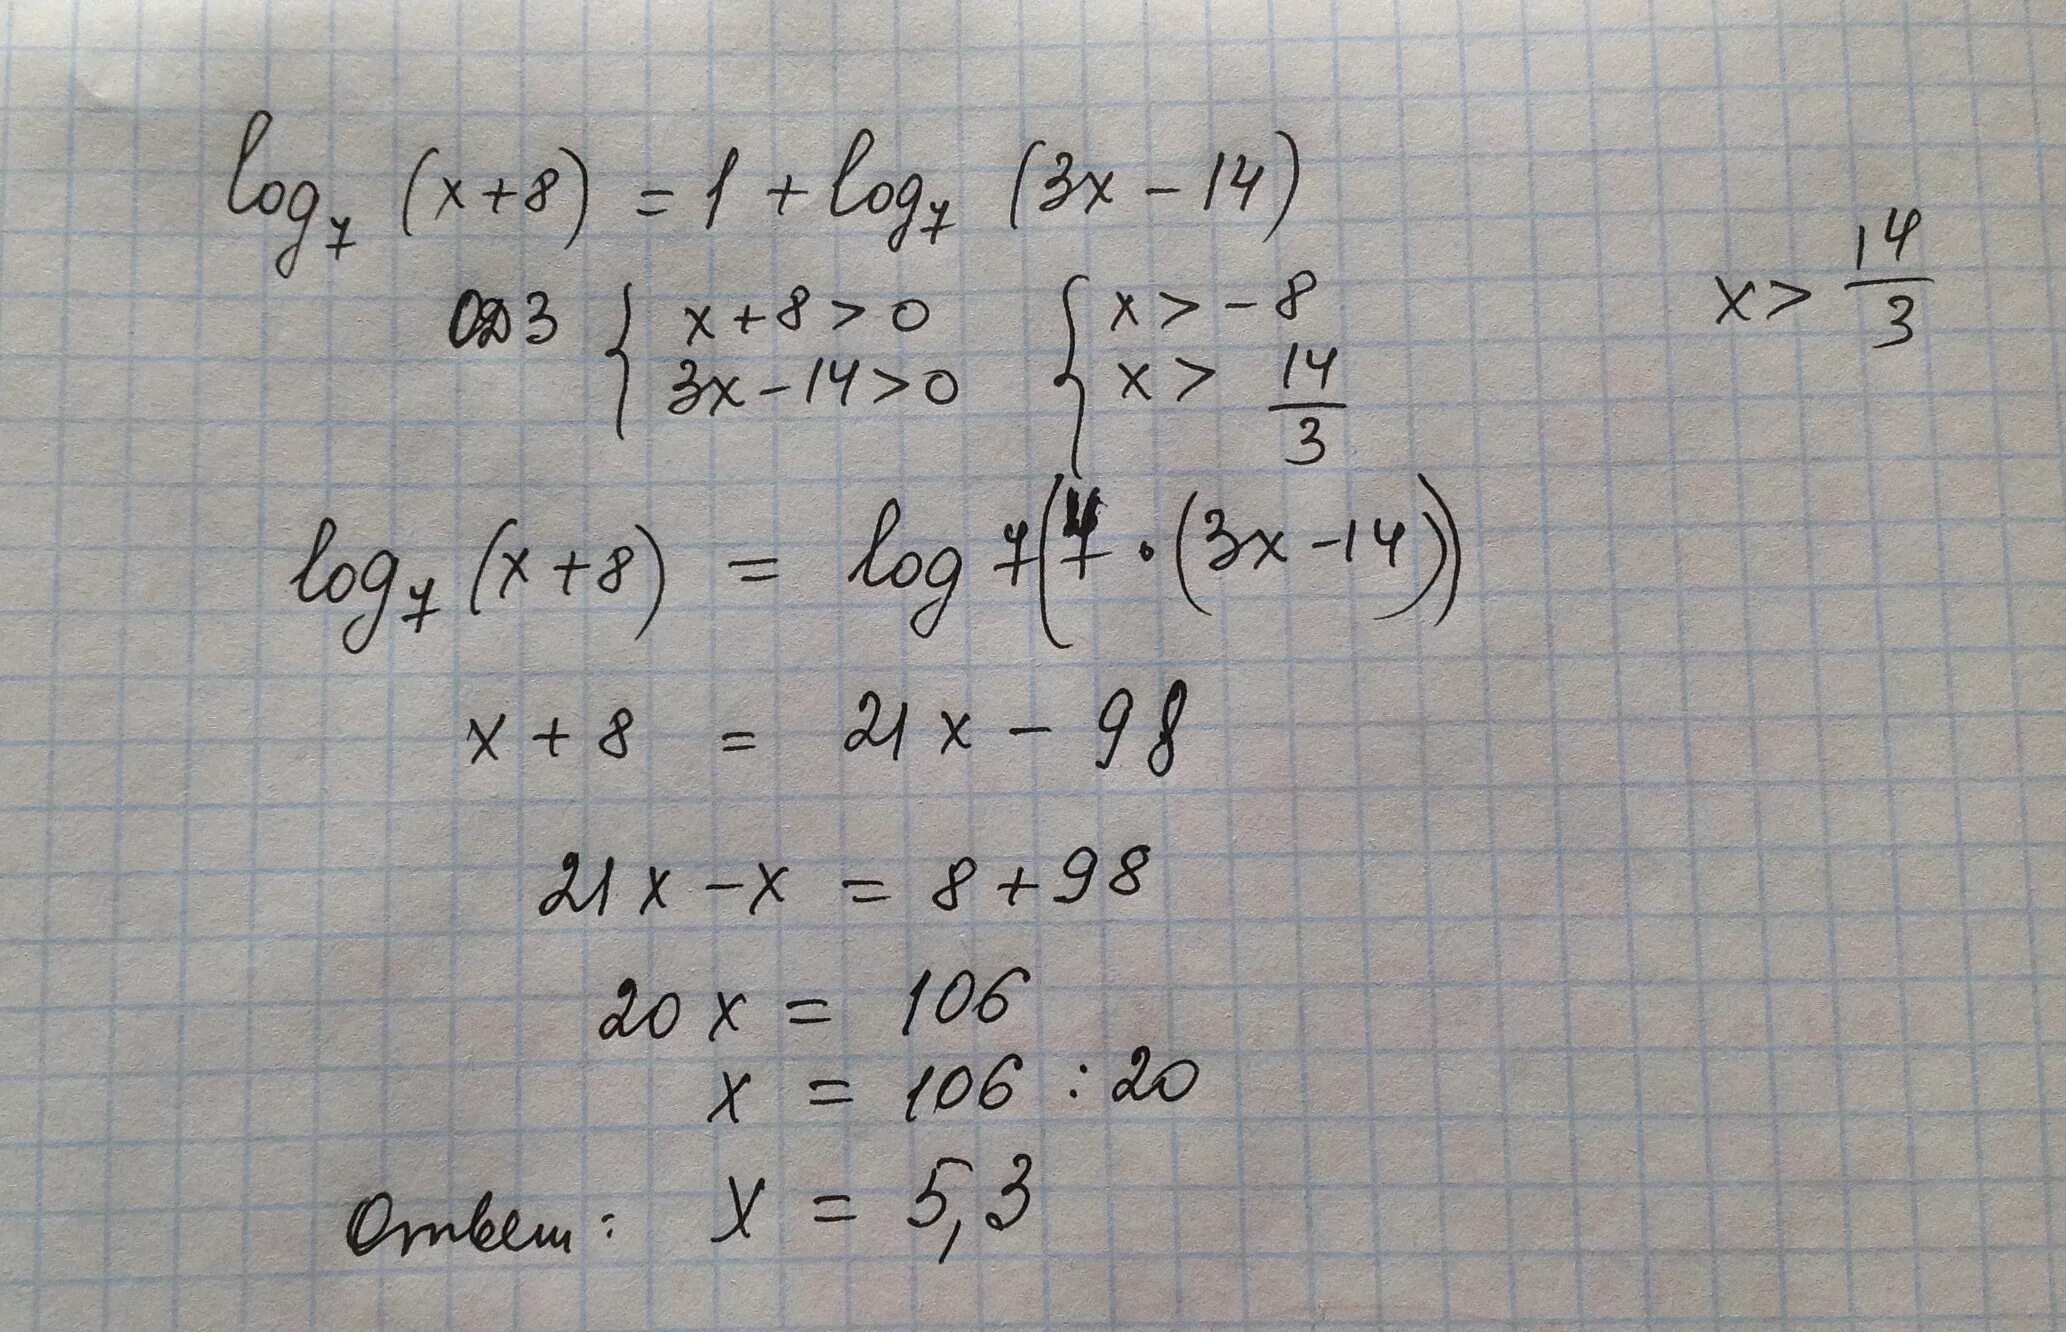 Log3(x-7)<3. Log2(7-х)=2log8 3. Log3(x+3x-7)=1. 7/X+8 -1. 9 7 x 49 3 x